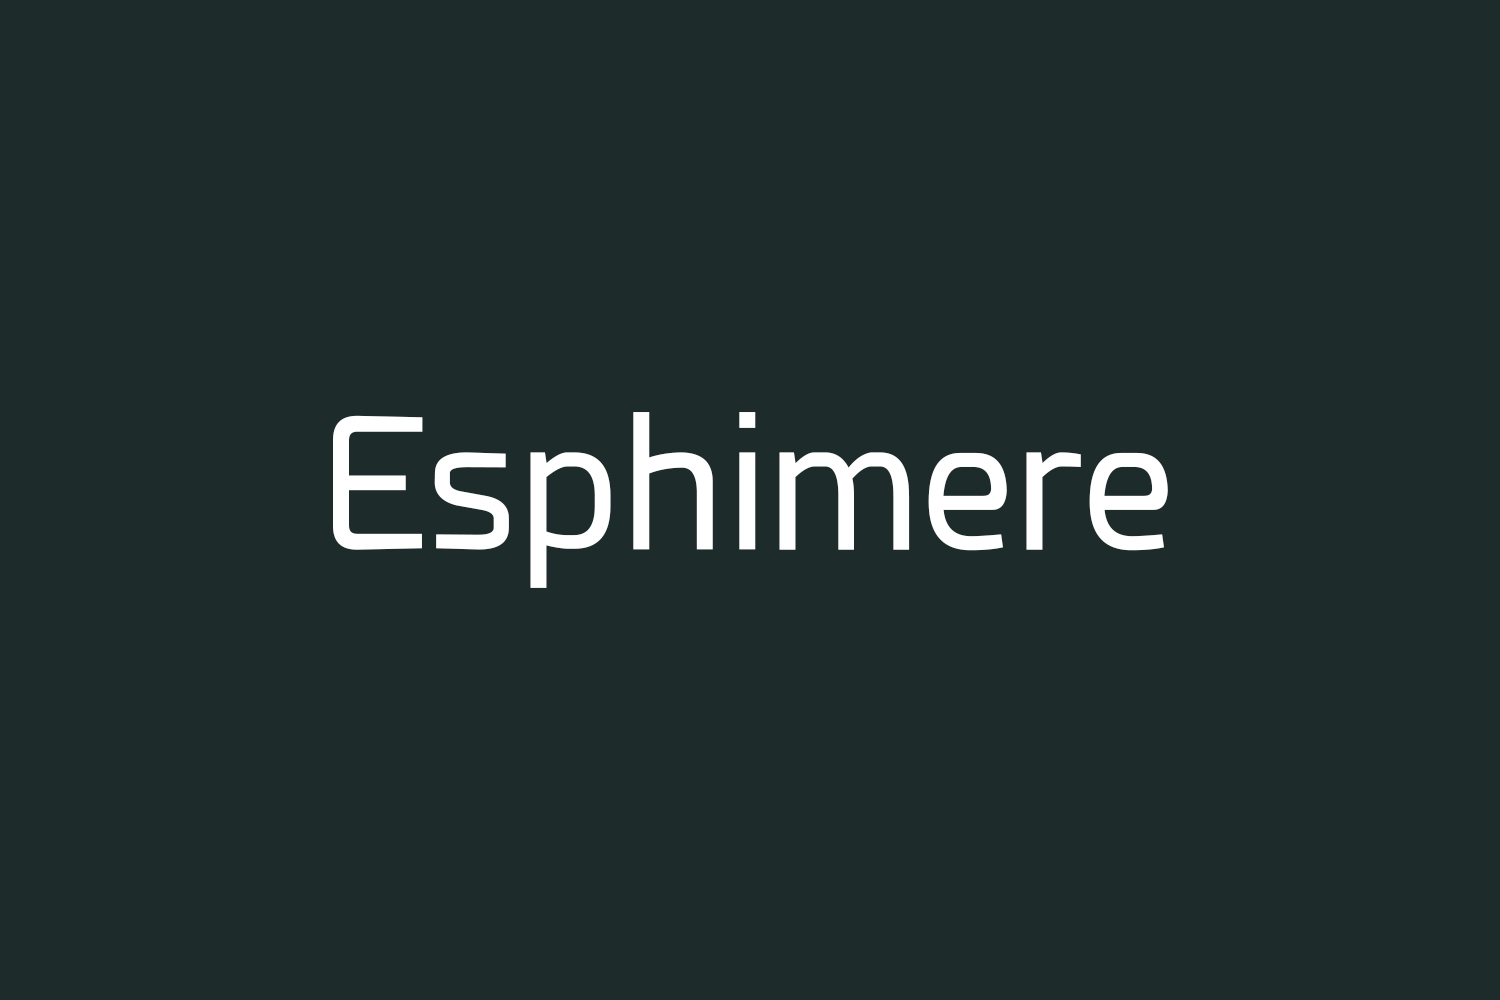 Esphimere Free Font